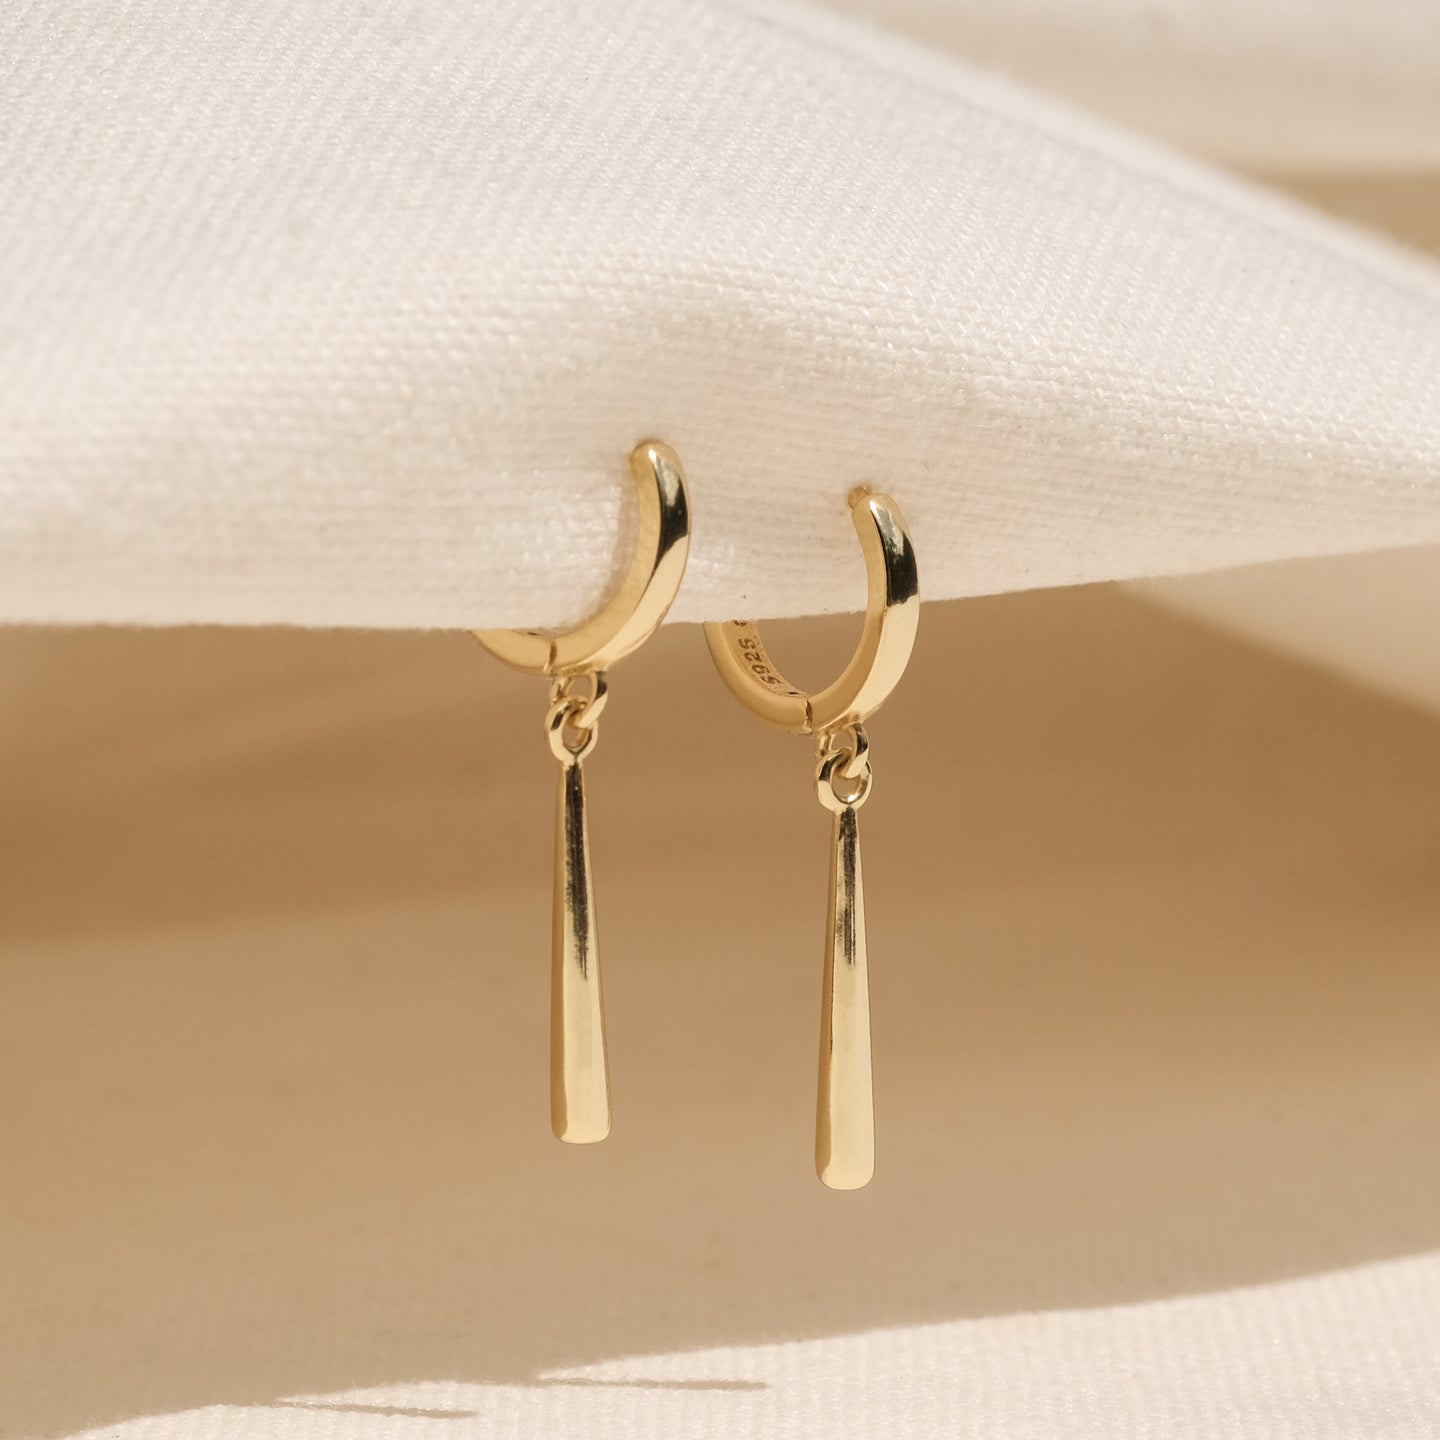 products/nenet-earrings-18k-gold-vermeil-1.jpg